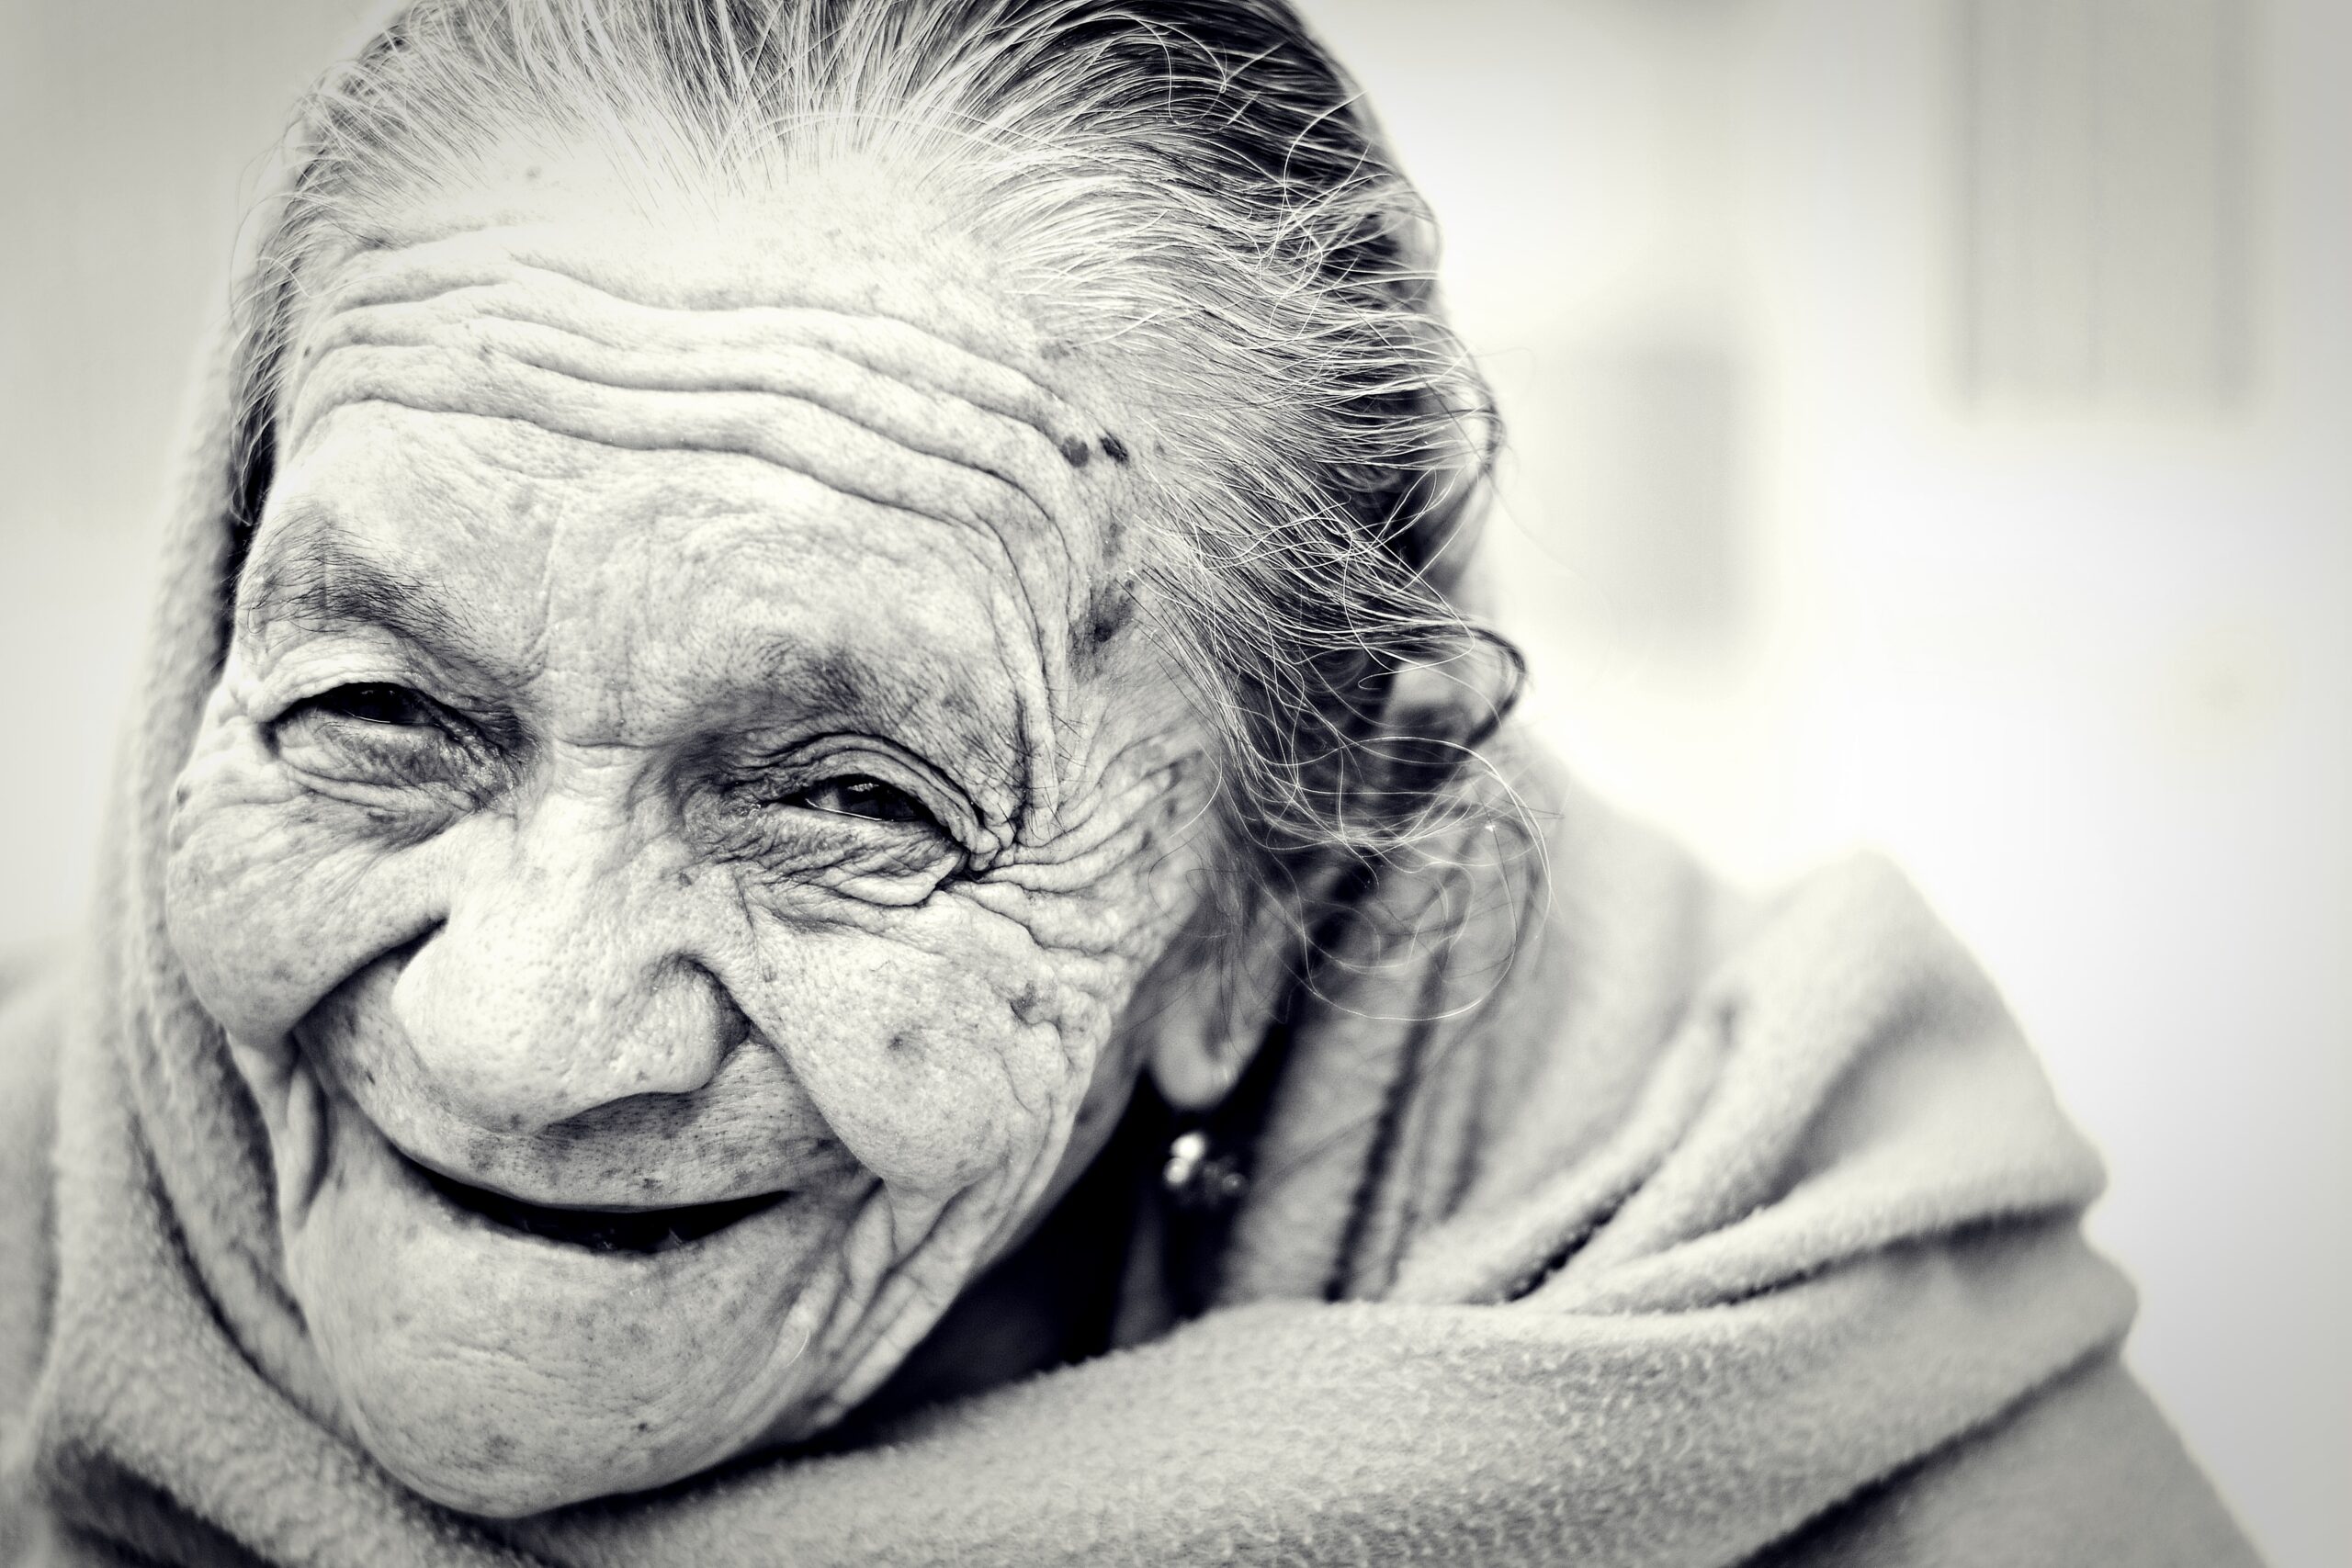 Zwart-wit foto van oude, blij kijkende vrouw